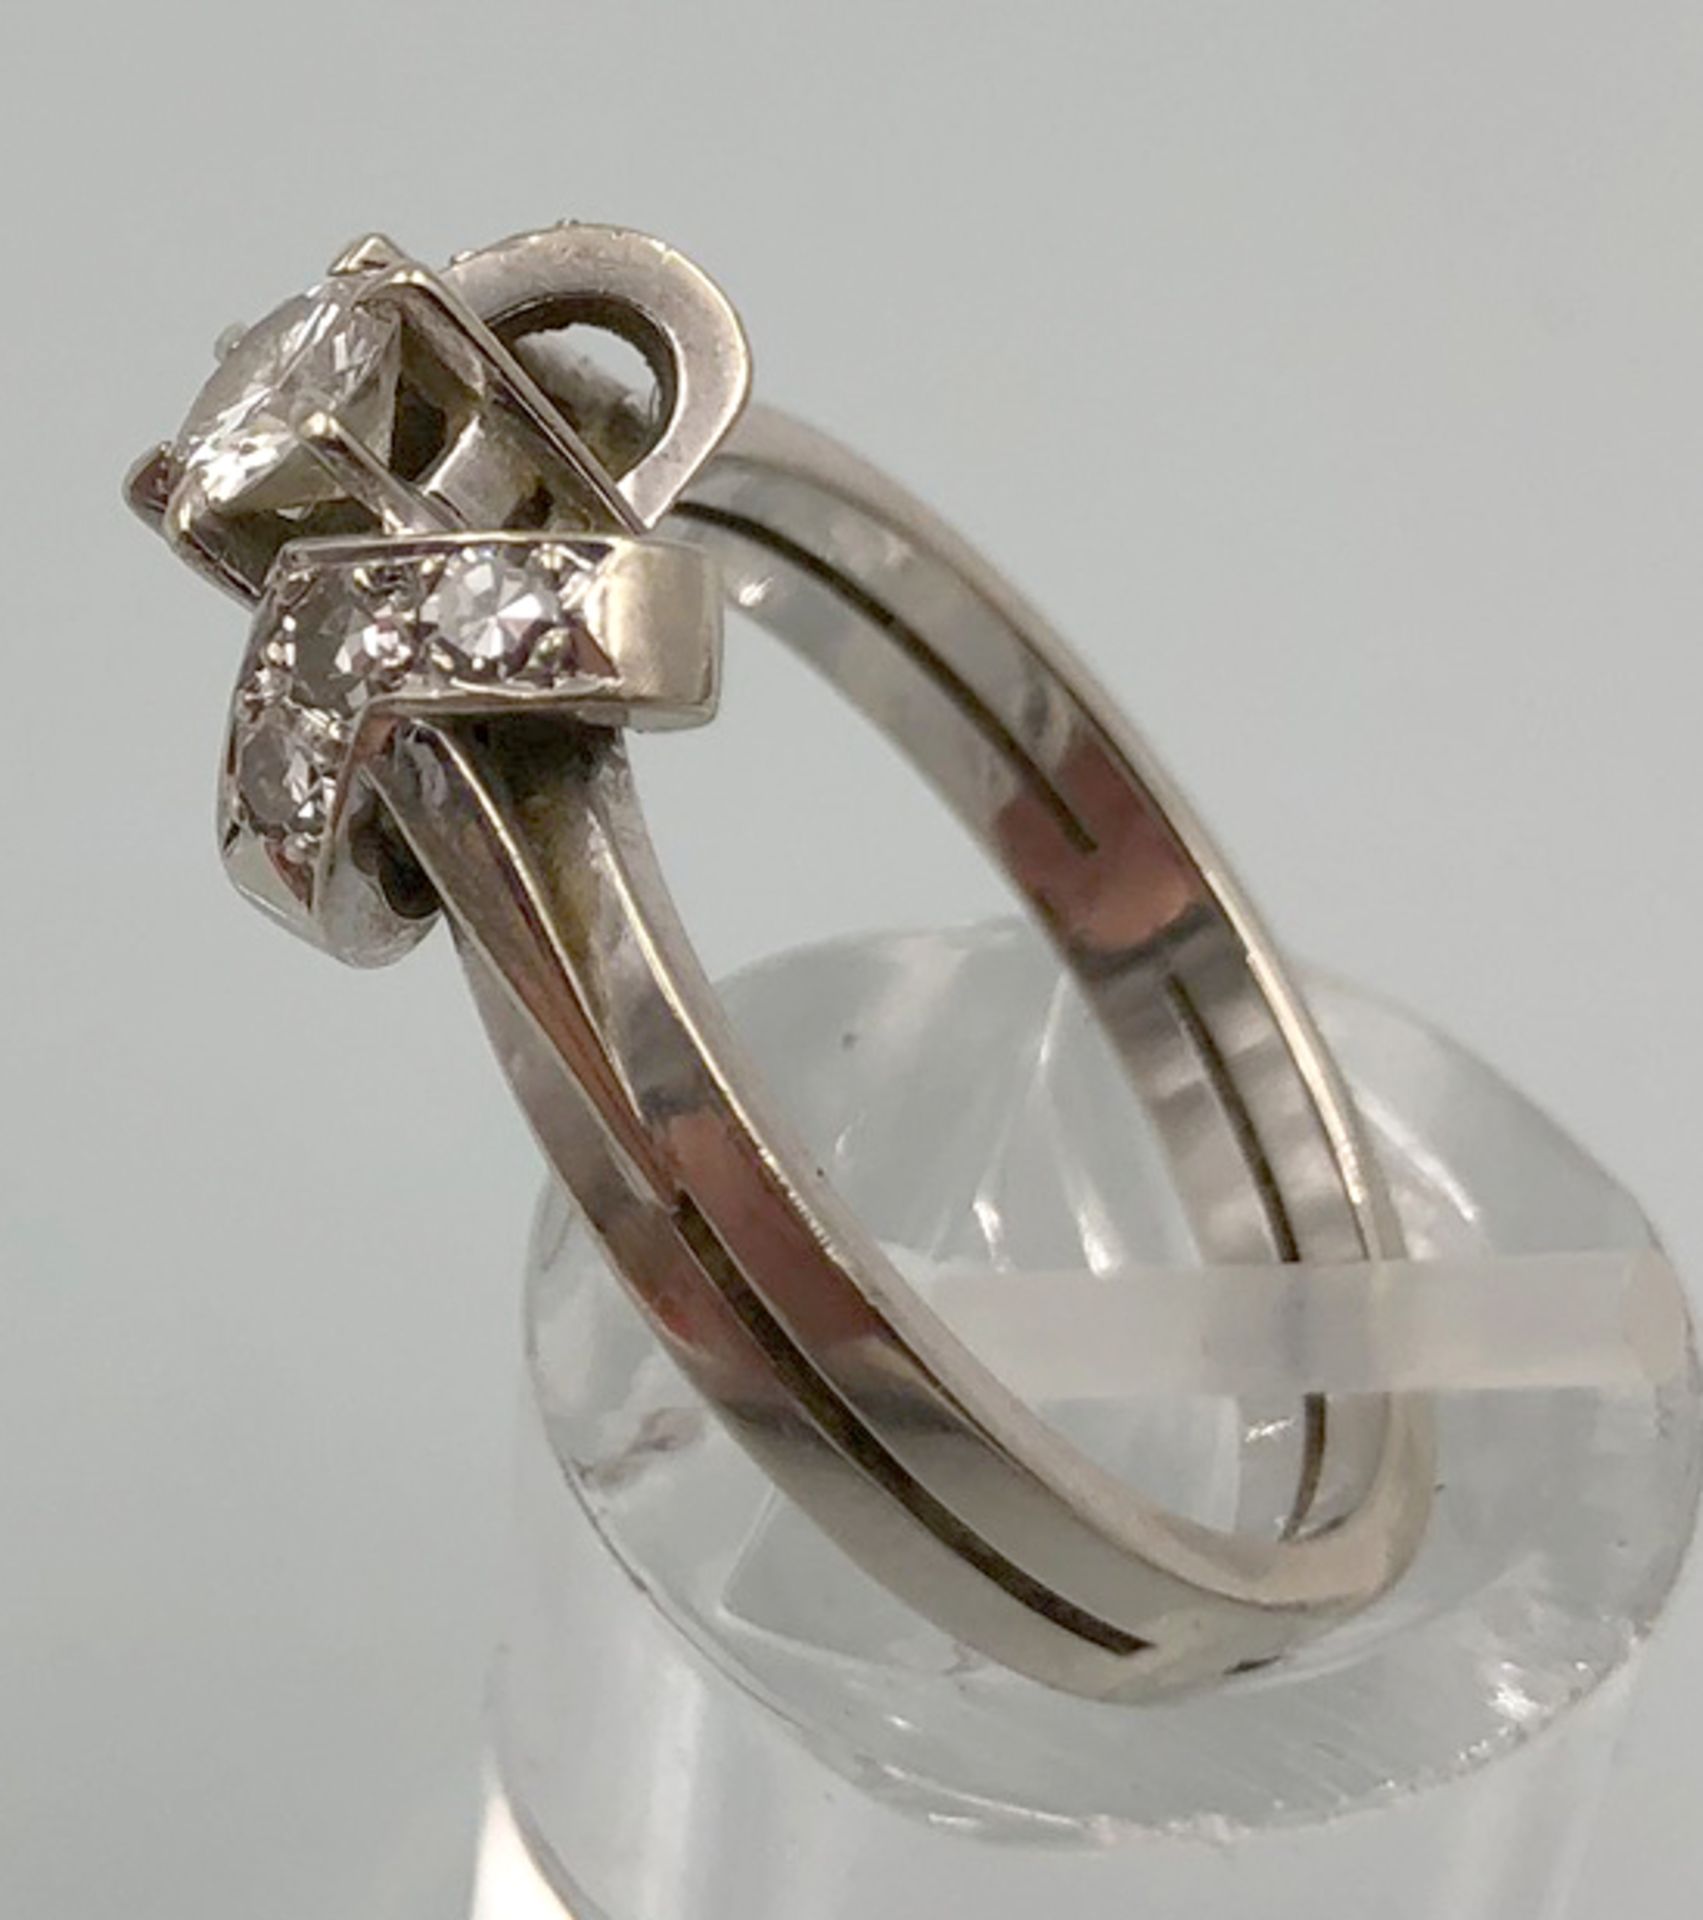 Weiß Gold 585. Ring mit Brillanten.4,0 Gramm Gesamtgewicht. Der mittige Diamant 4,48 mm Durchmesser, - Bild 10 aus 13